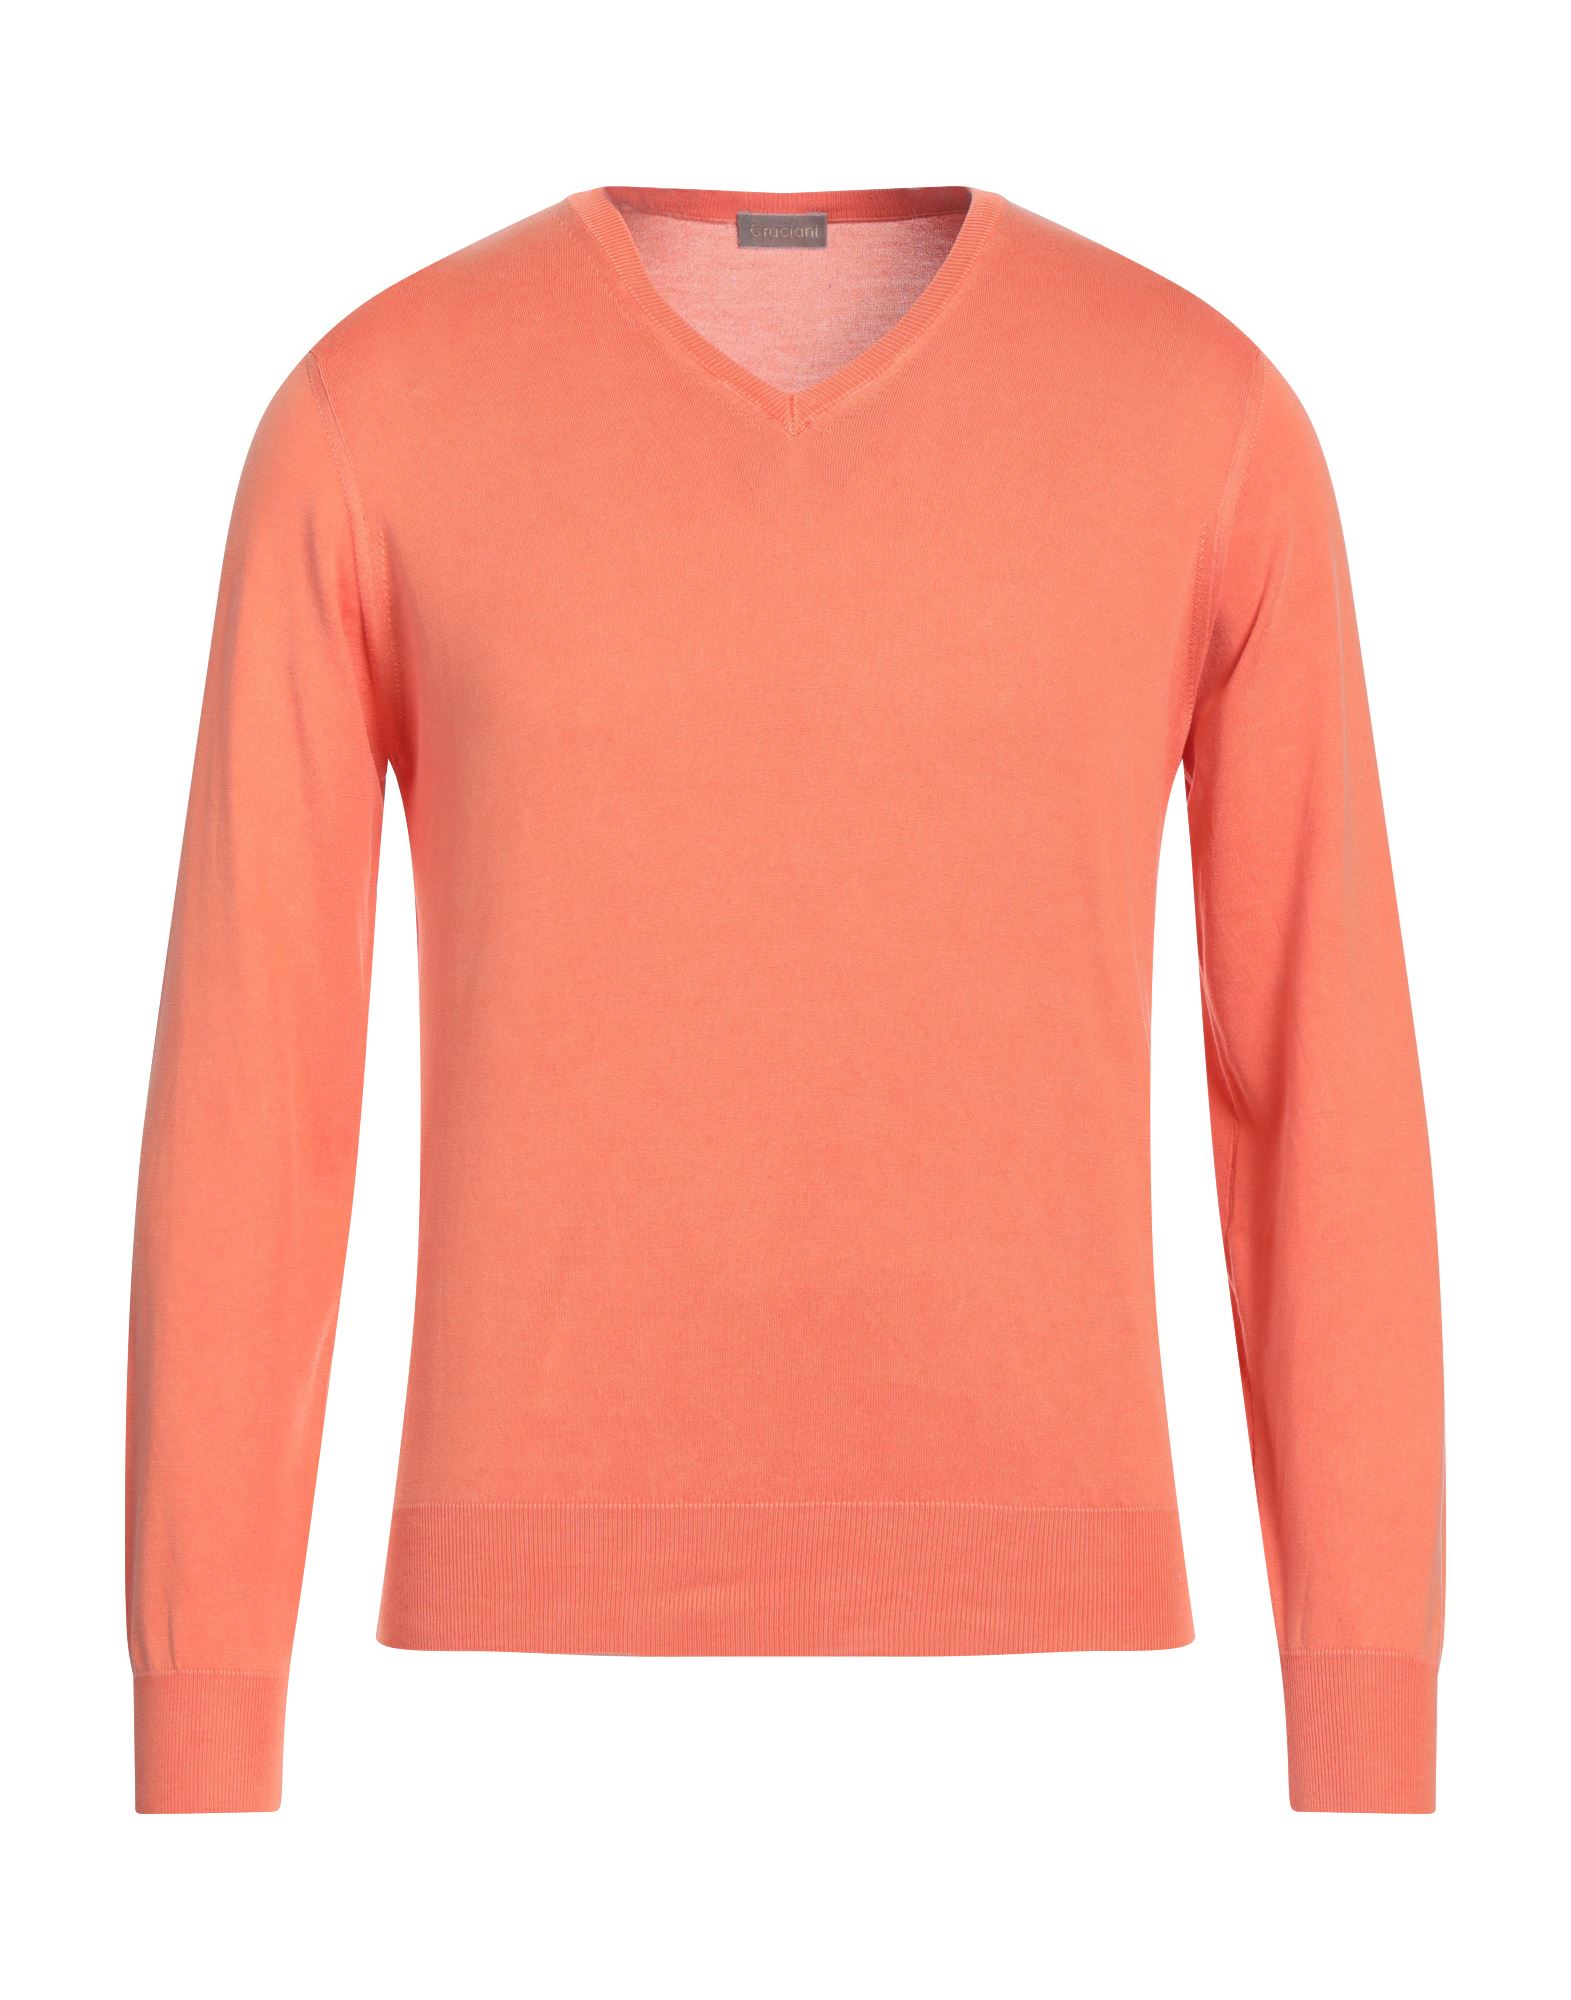 Cruciani Sweaters In Orange